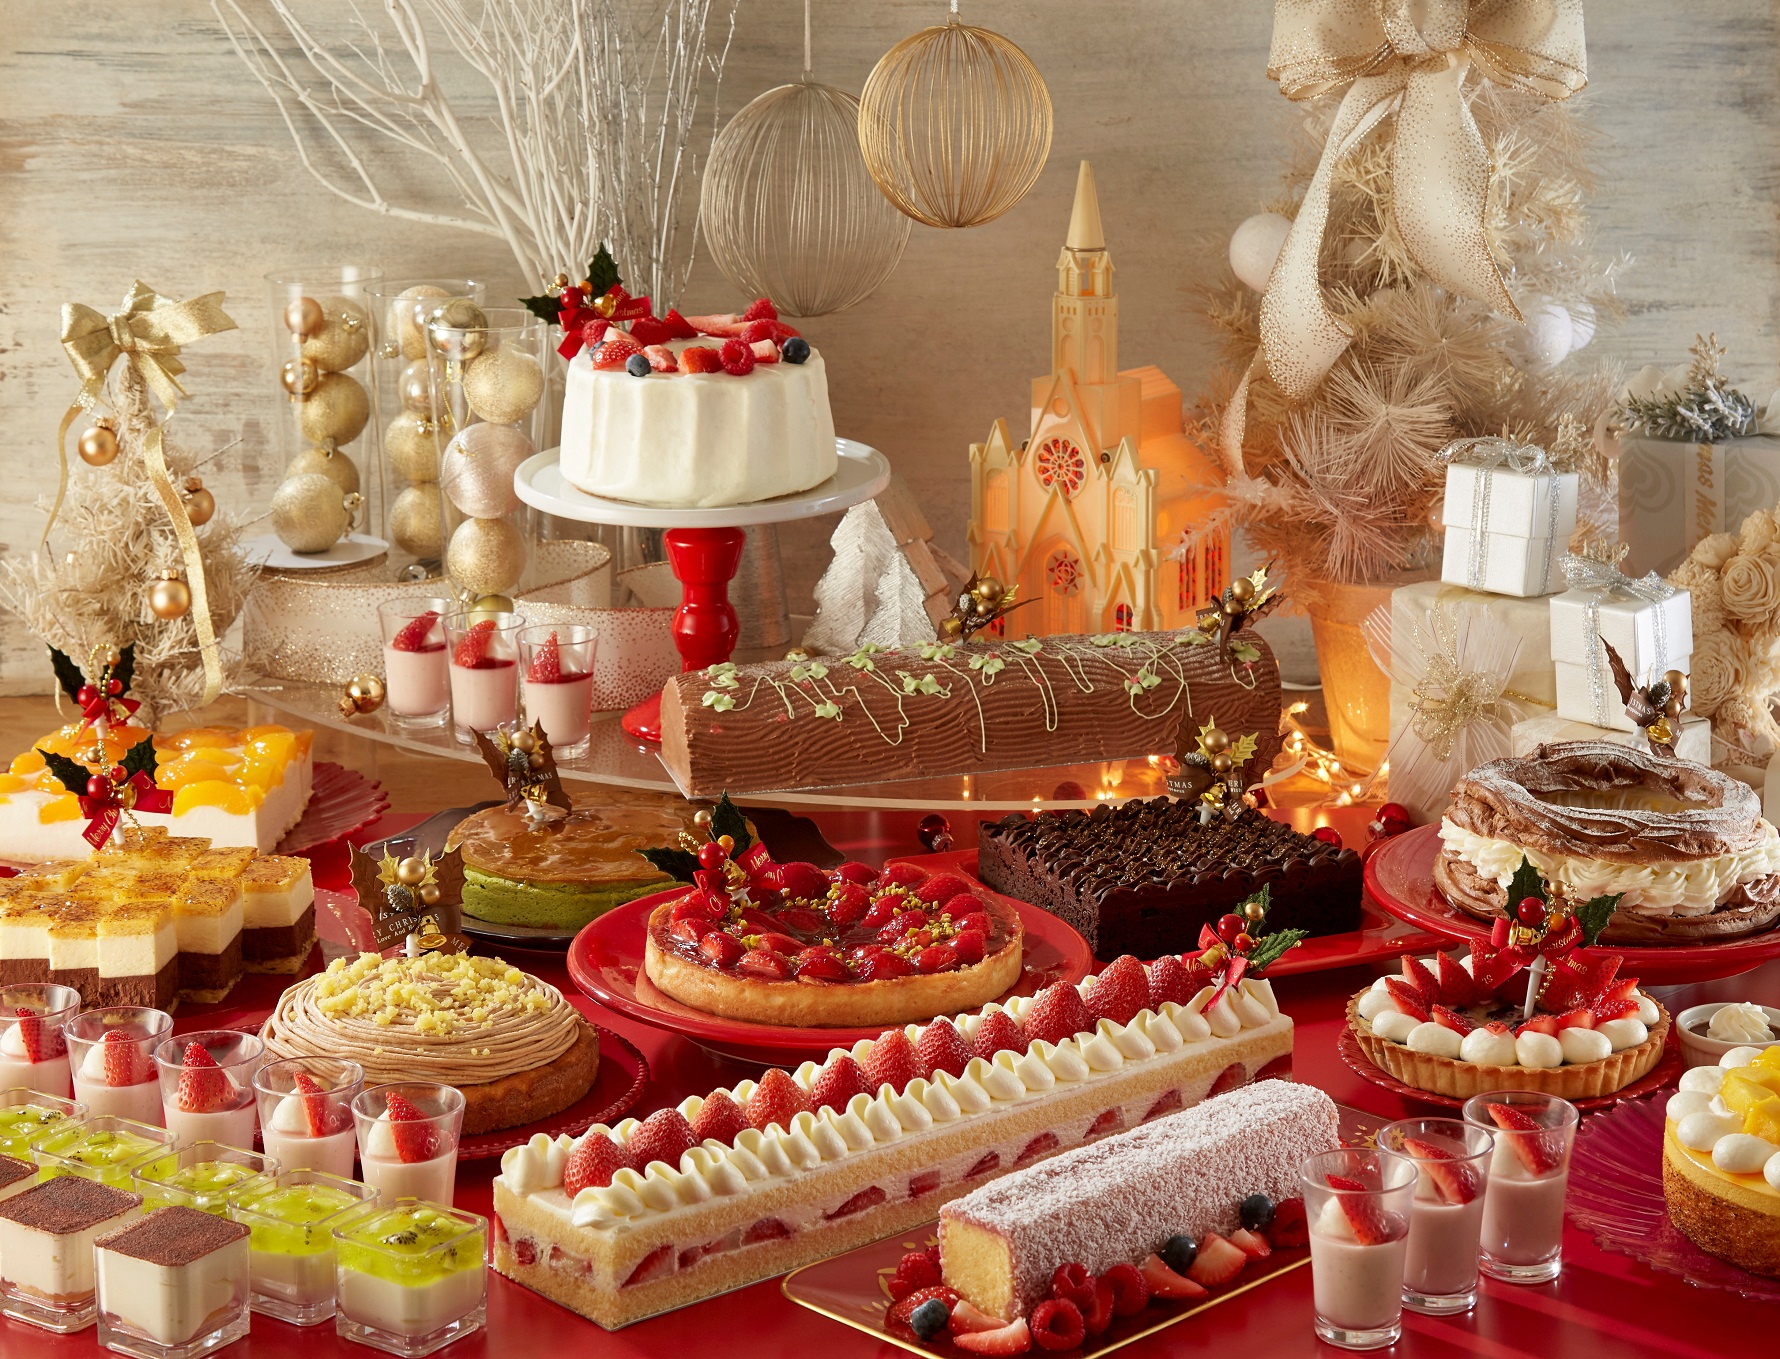 サンシャインシティプリンスホテル フランス伝統のクリスマスケーキ ブッシュ ド ノエルなど 約種のスイーツが楽しめる クリスマススイーツフェア を開催 株式会社プリンスホテルのプレスリリース